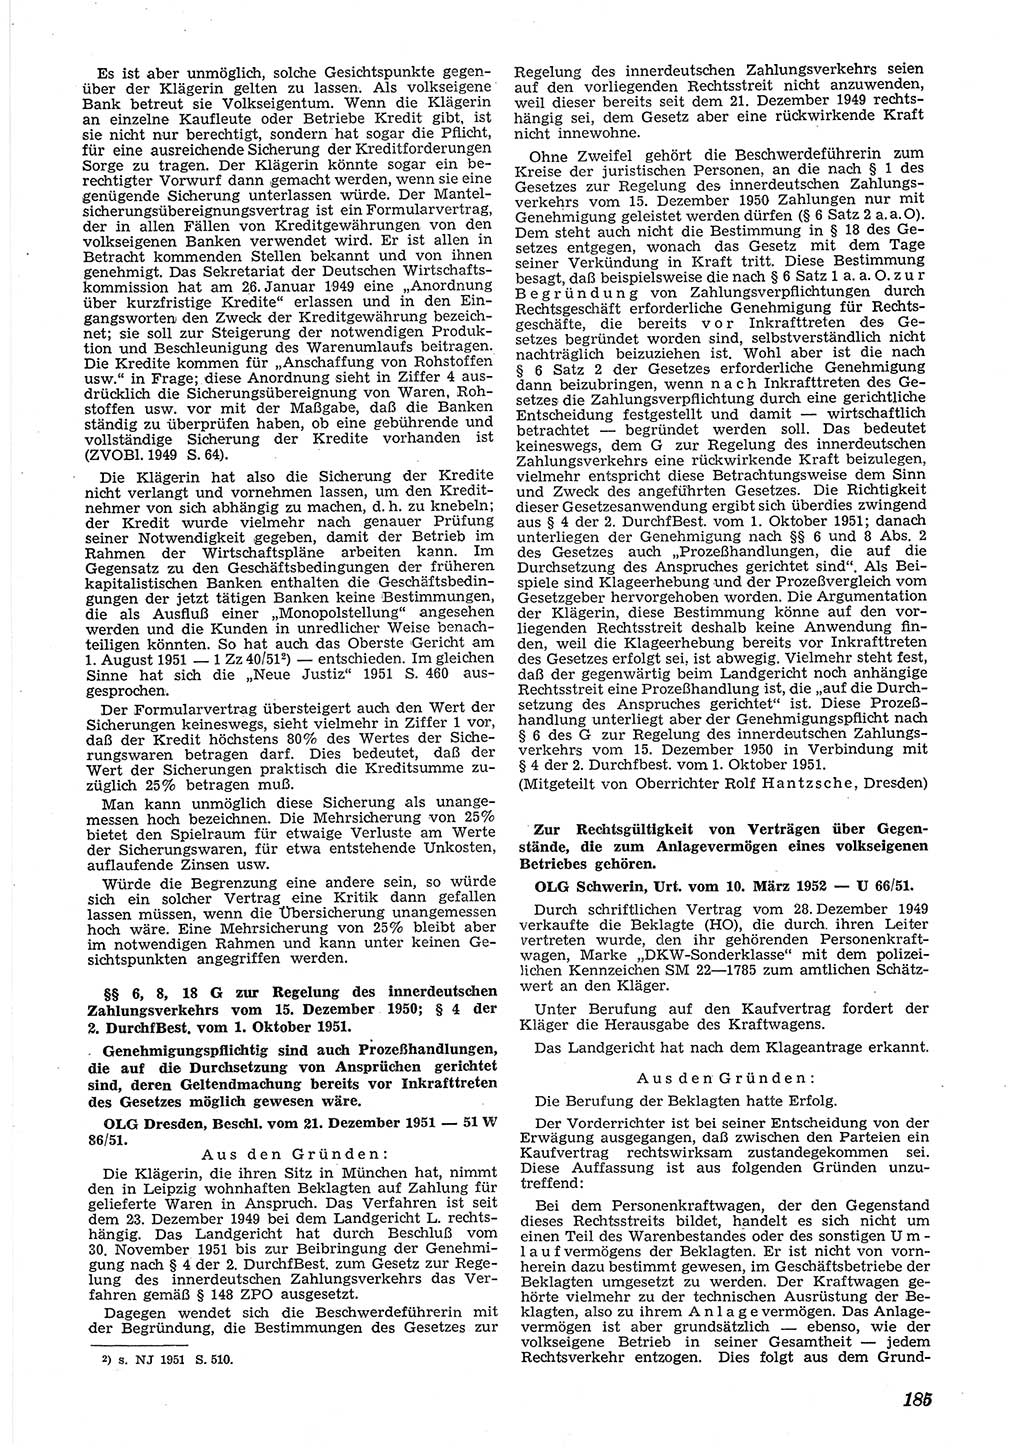 Neue Justiz (NJ), Zeitschrift für Recht und Rechtswissenschaft [Deutsche Demokratische Republik (DDR)], 6. Jahrgang 1952, Seite 185 (NJ DDR 1952, S. 185)